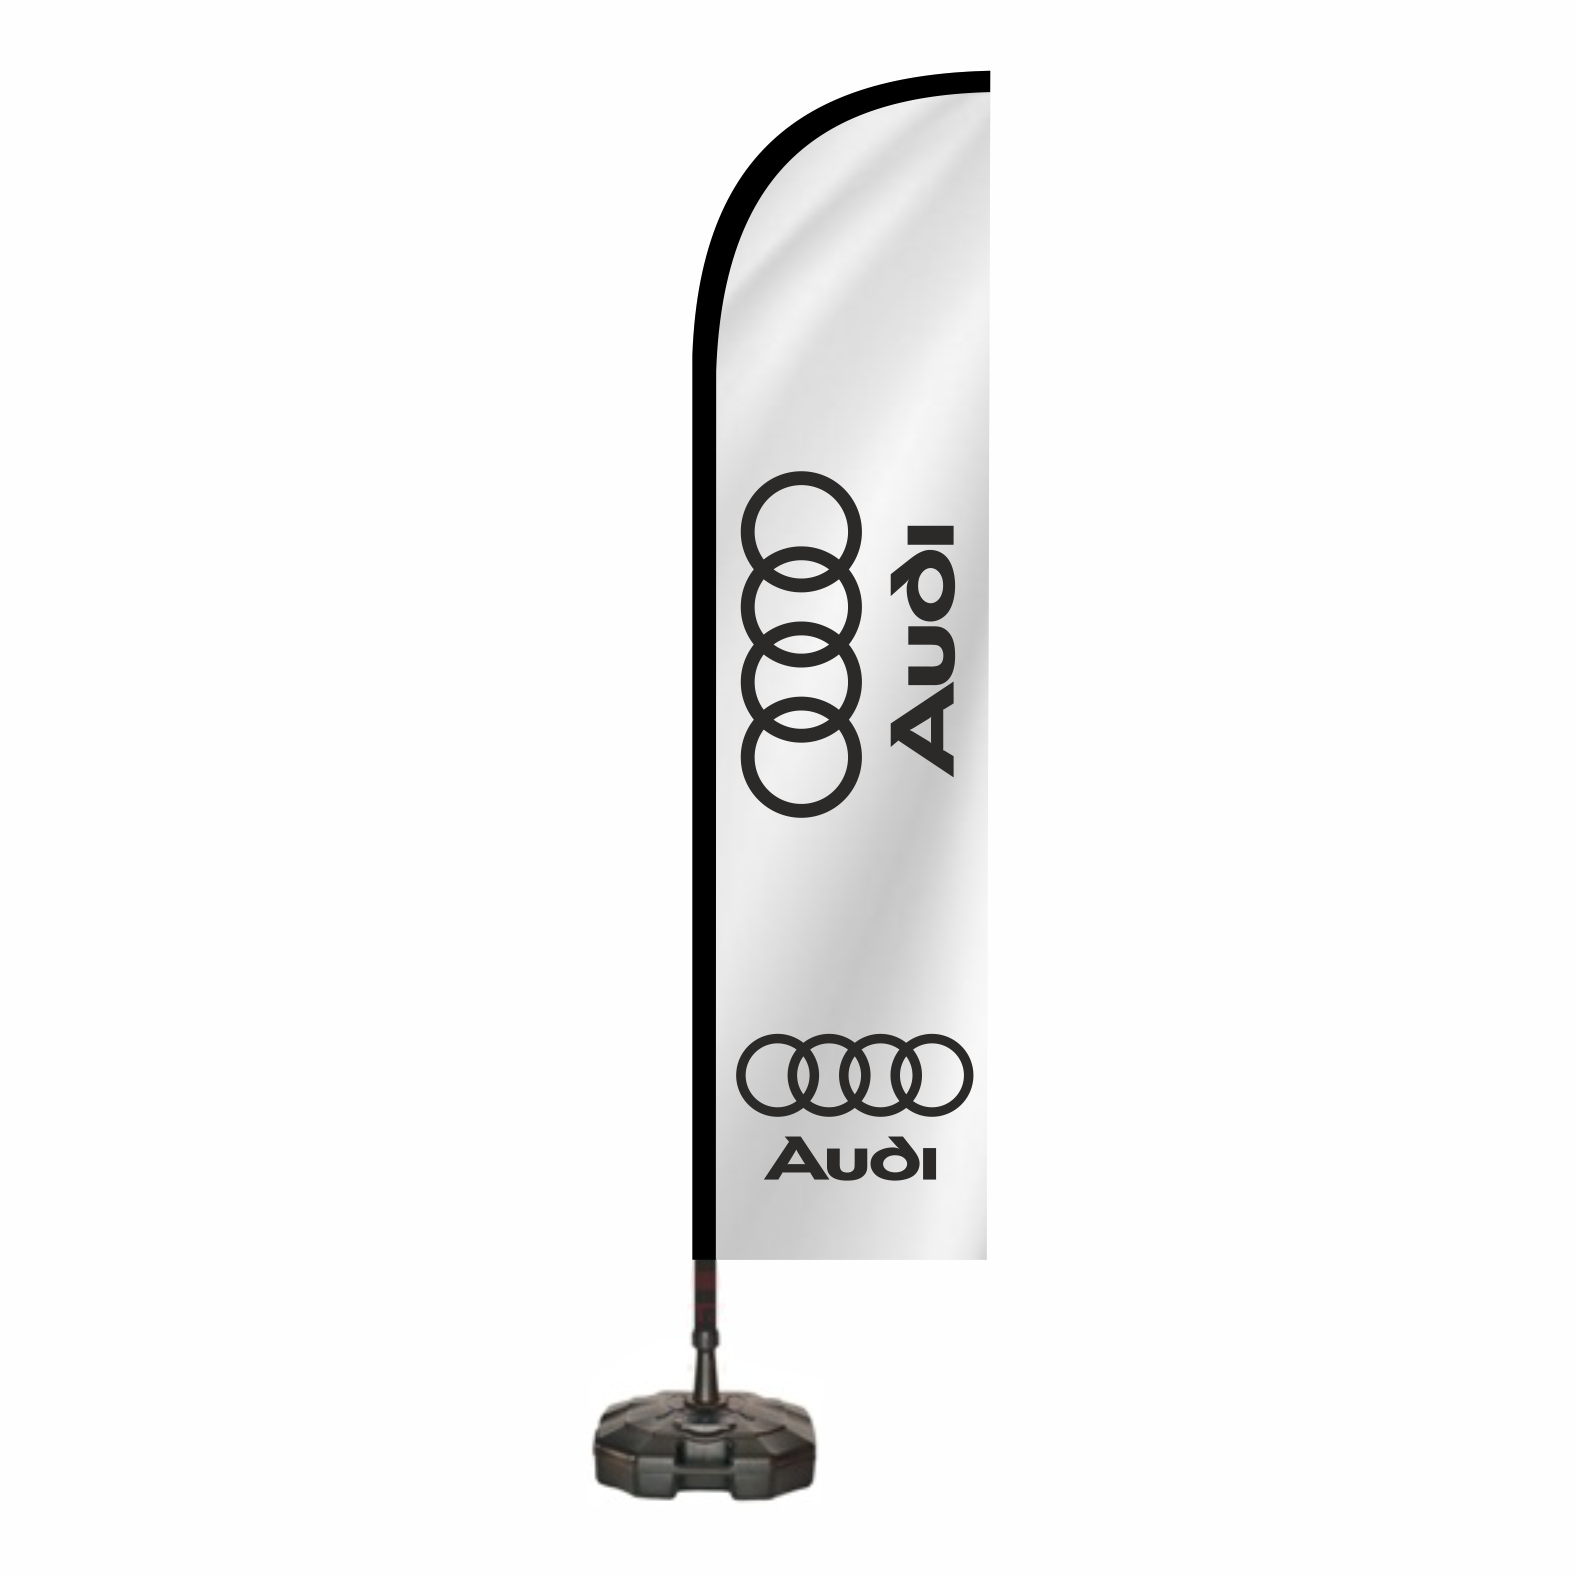 Audi Reklam Bayra Ne Demektir